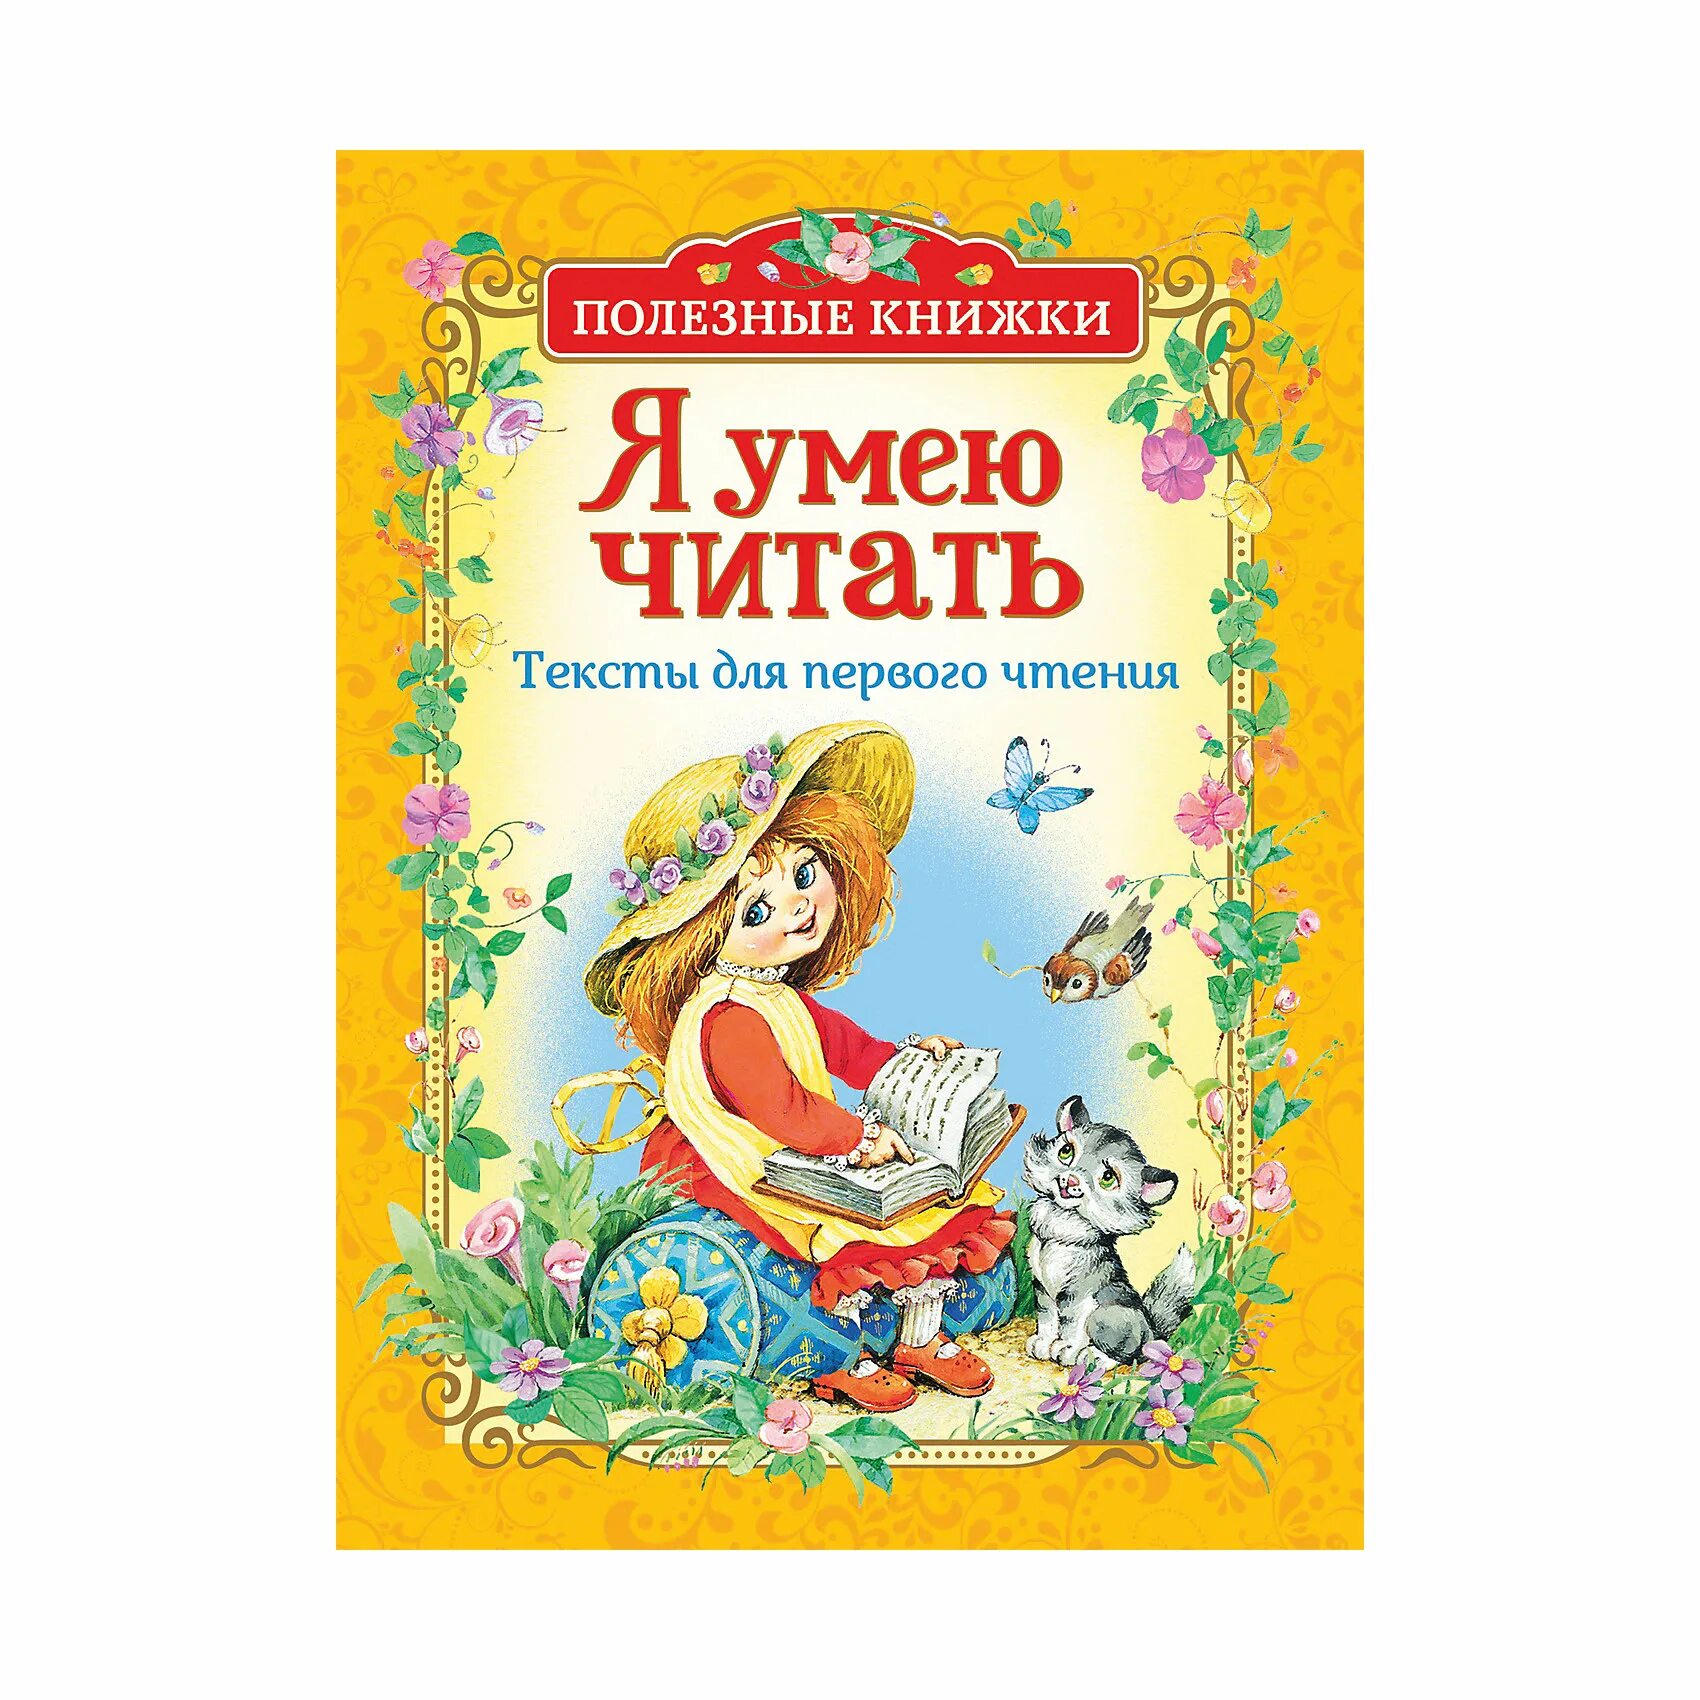 Москва первое чтение. Книги для первого чтения. Книги для первого чтения детьми. Я умею книги для детей. Крига для первого чтения.